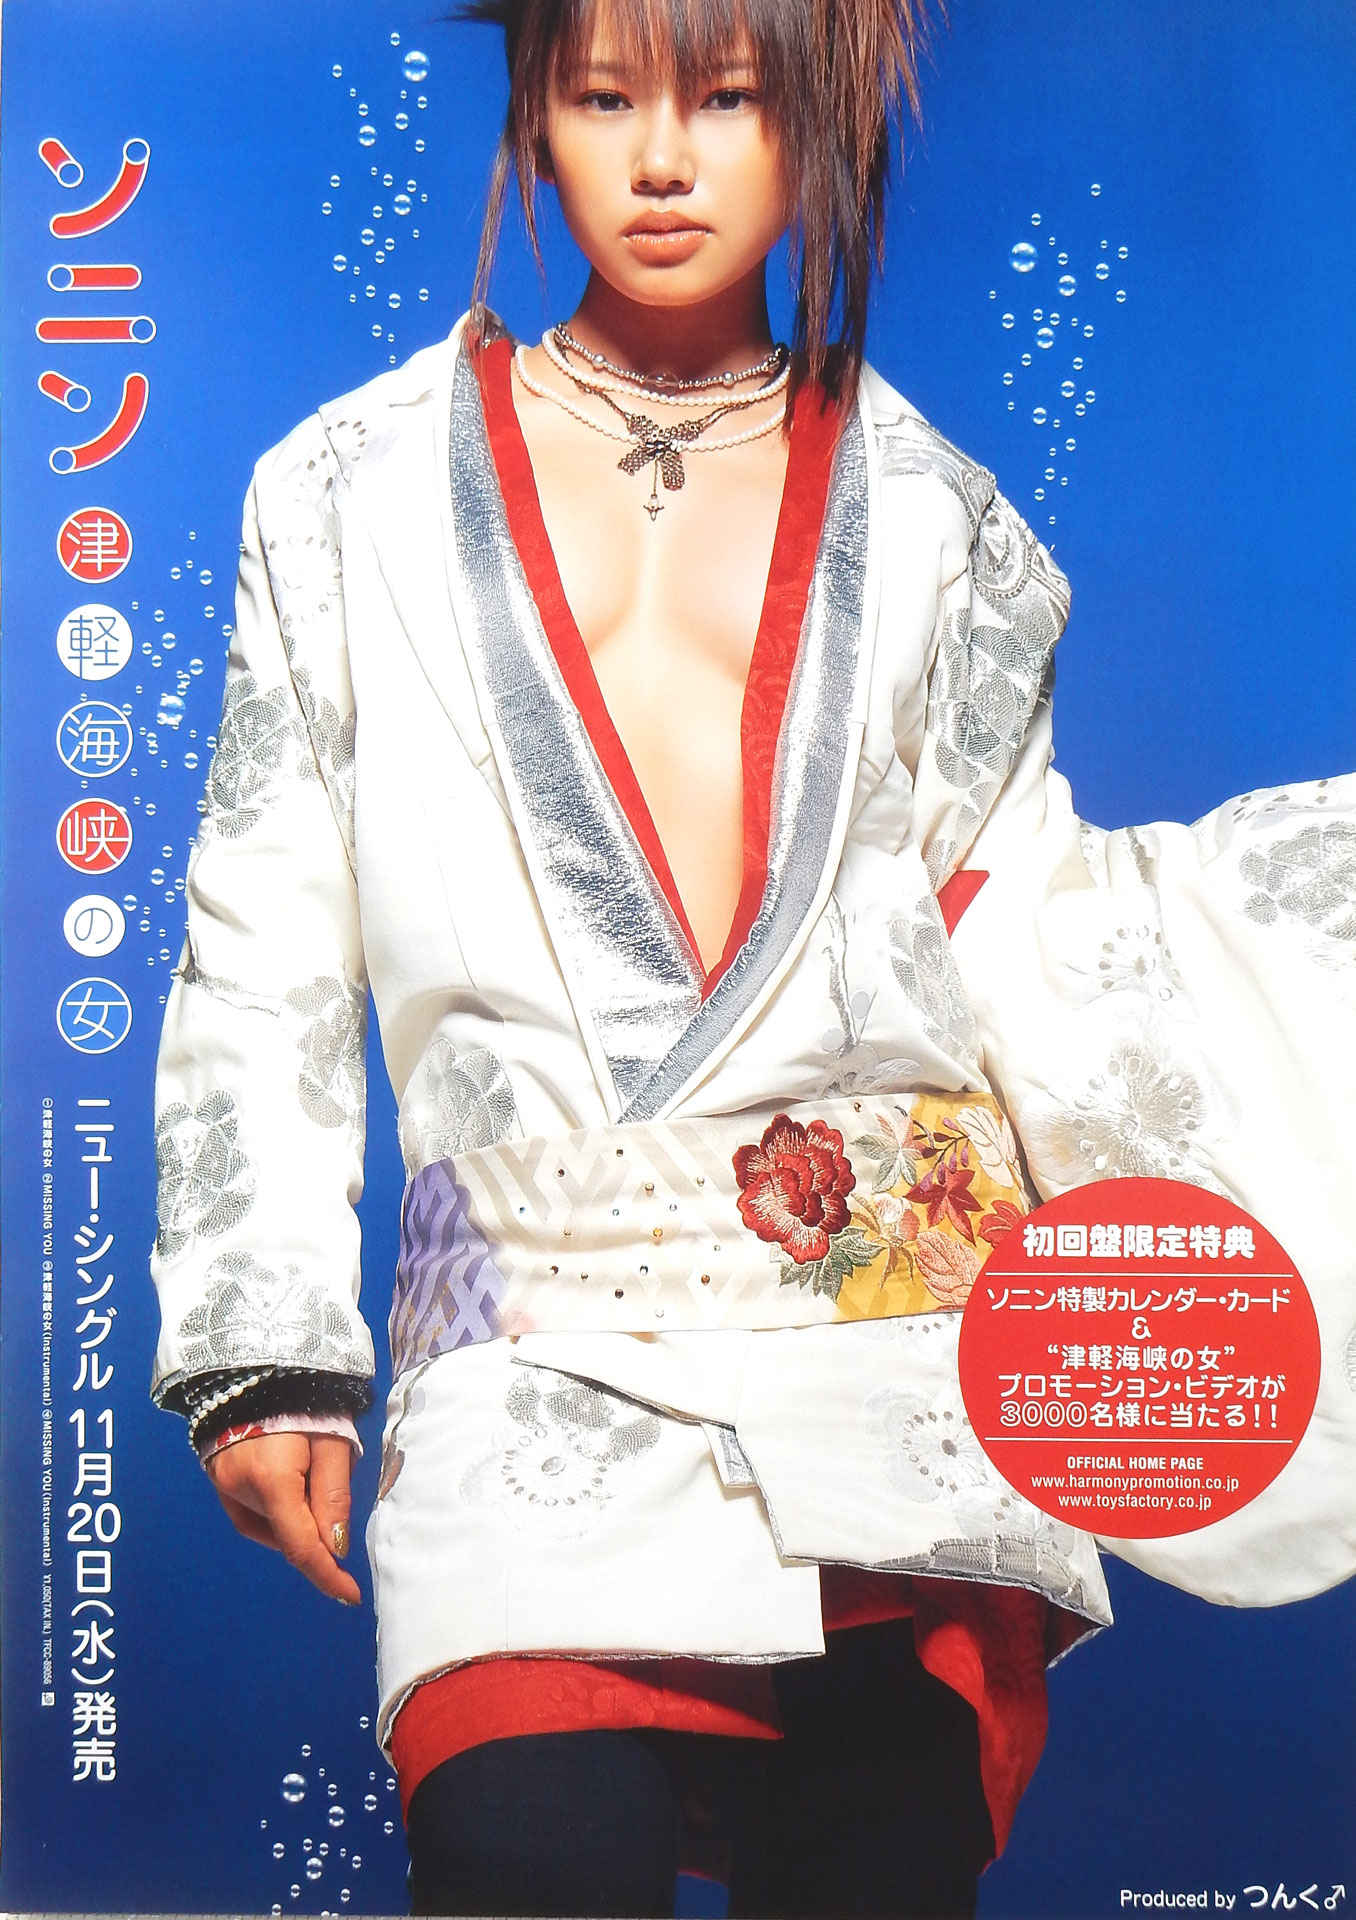 ソニン 「津軽海峡の女」 のポスター